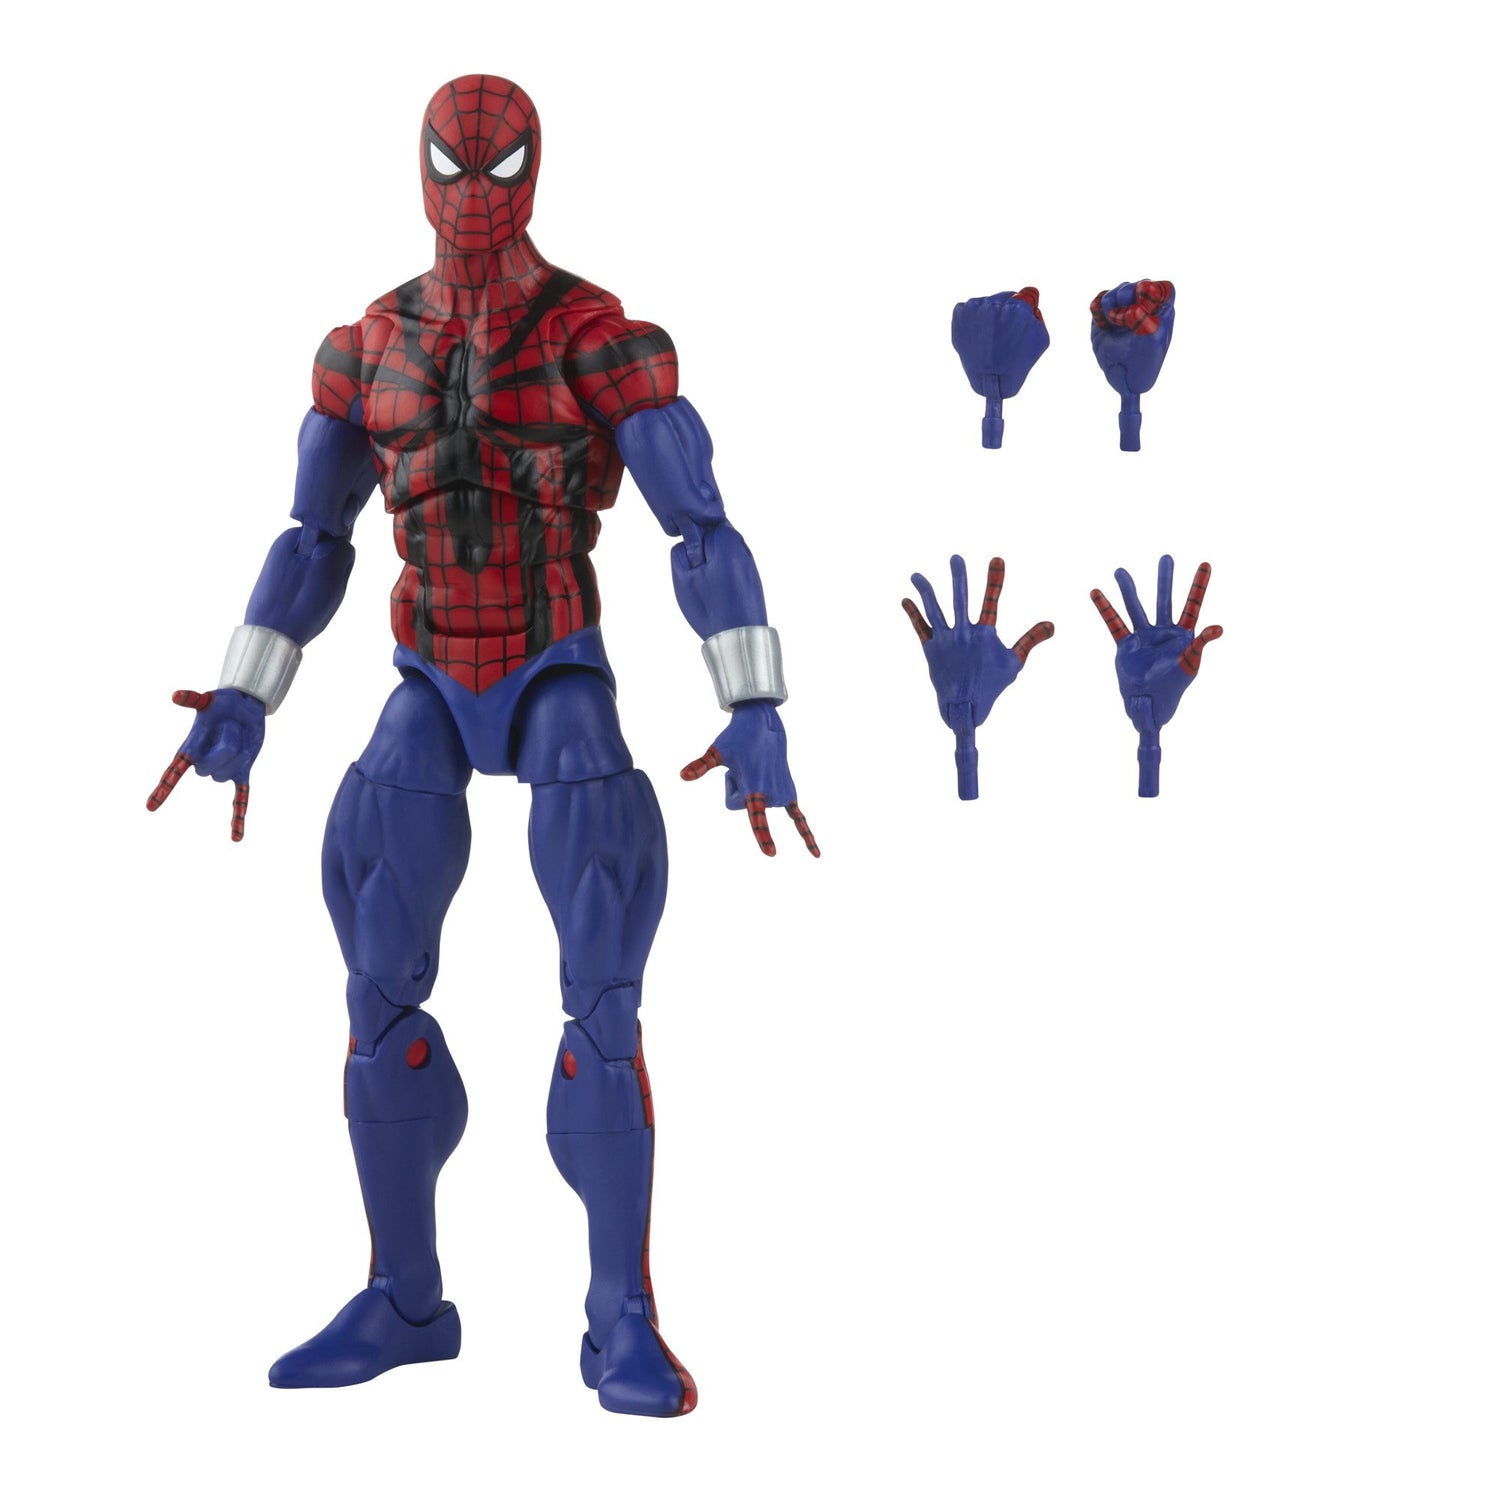 Marvel Legends Series Retro Spider-Man Ben Reilly Figure and accessories